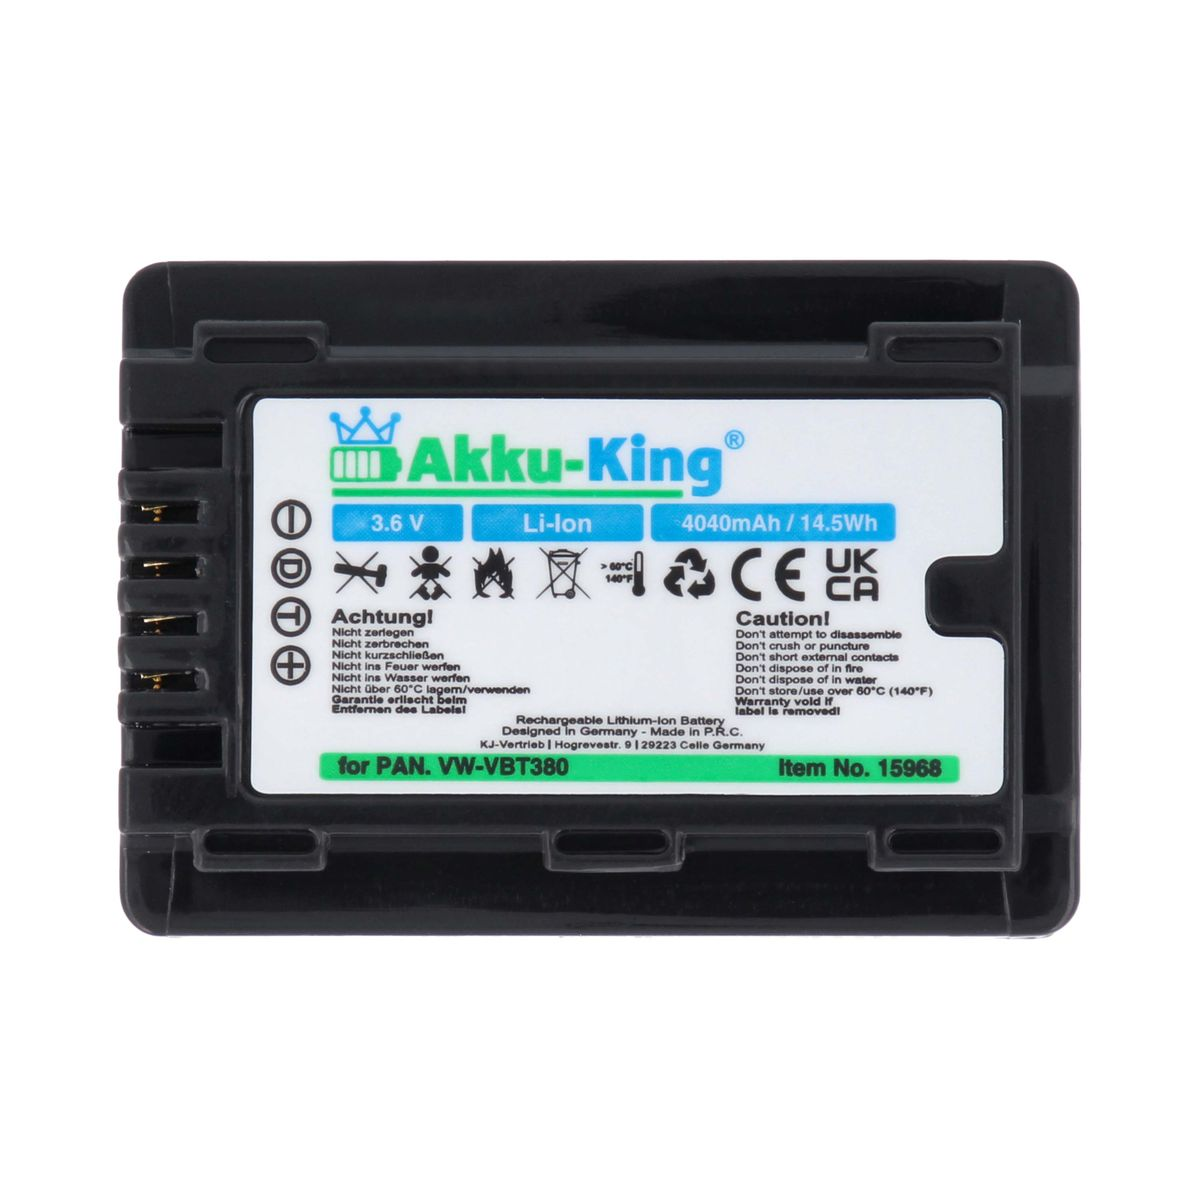 AKKU-KING Akku Panasonic 3.6 VW-VBT380 mit 4040mAh Li-Ion Volt, kompatibel Kamera-Akku